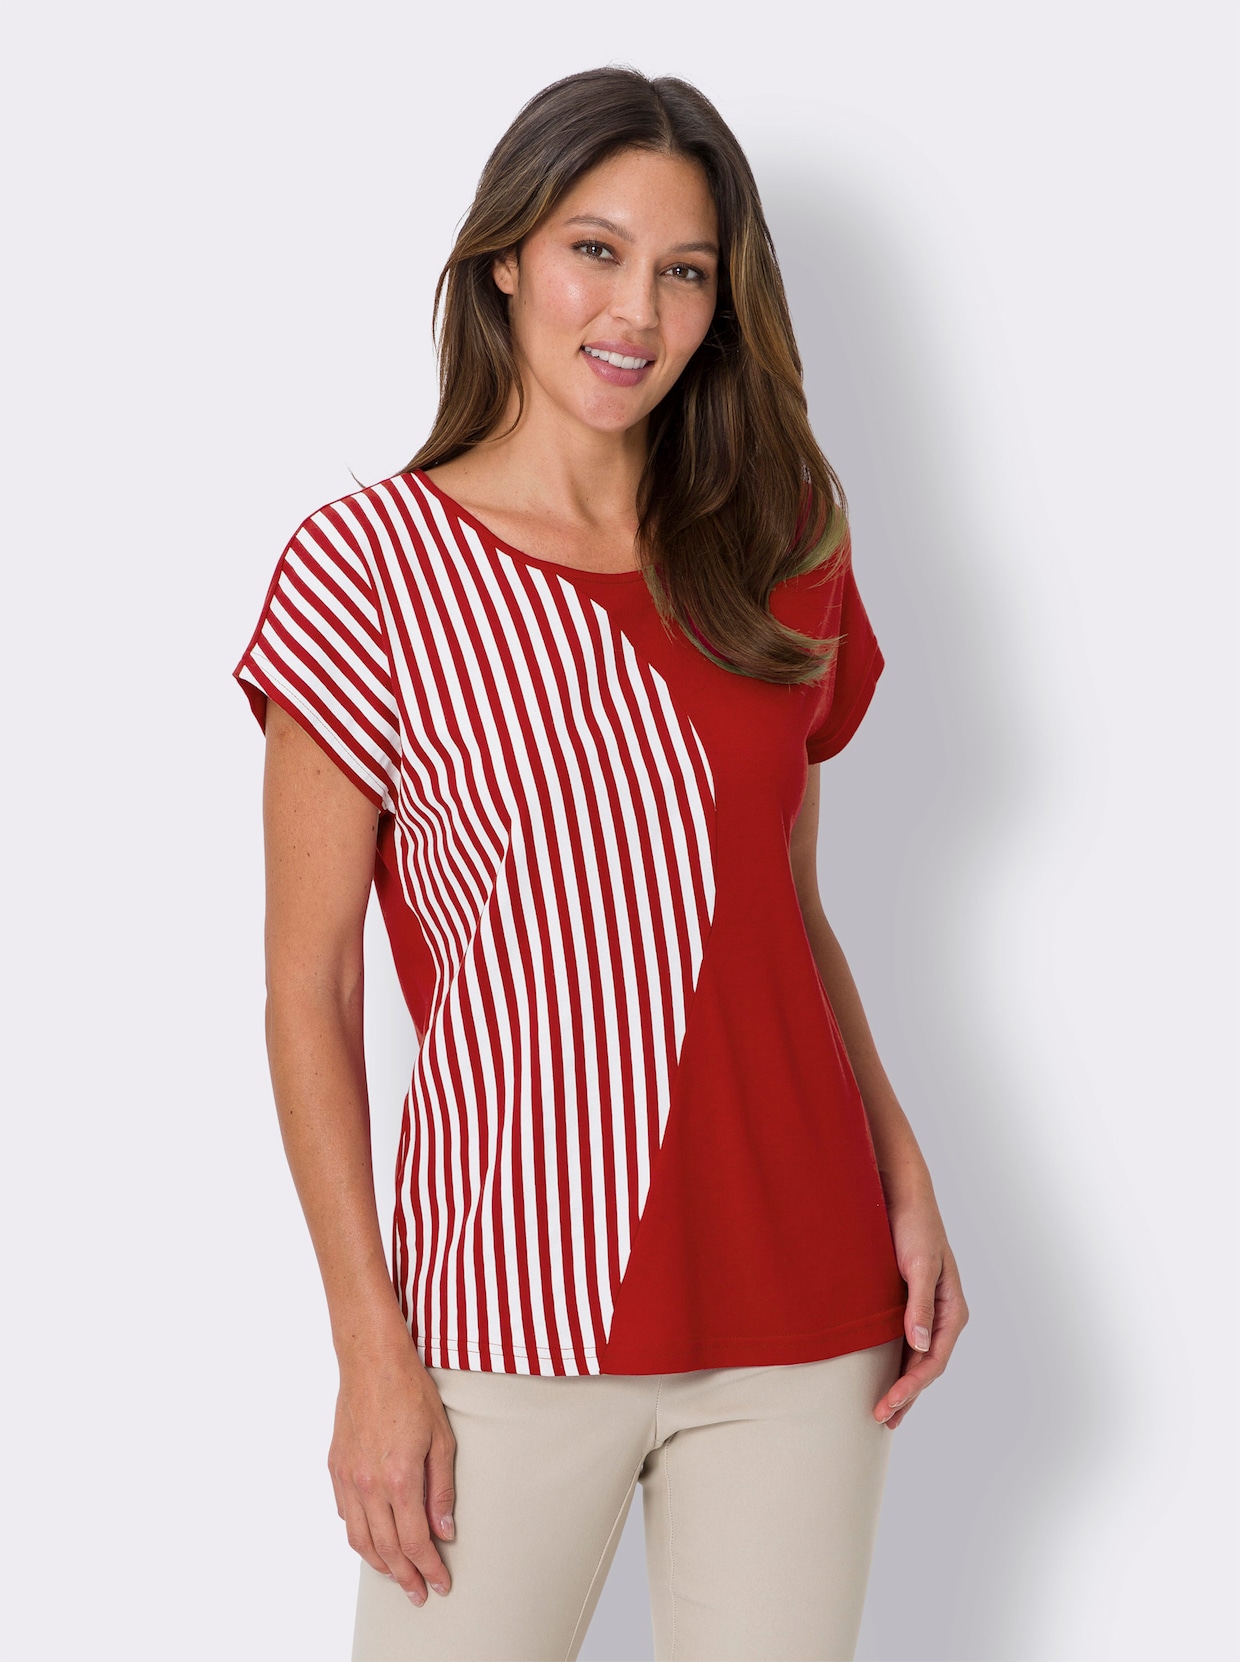 Proužkované tričko - červená-bílá